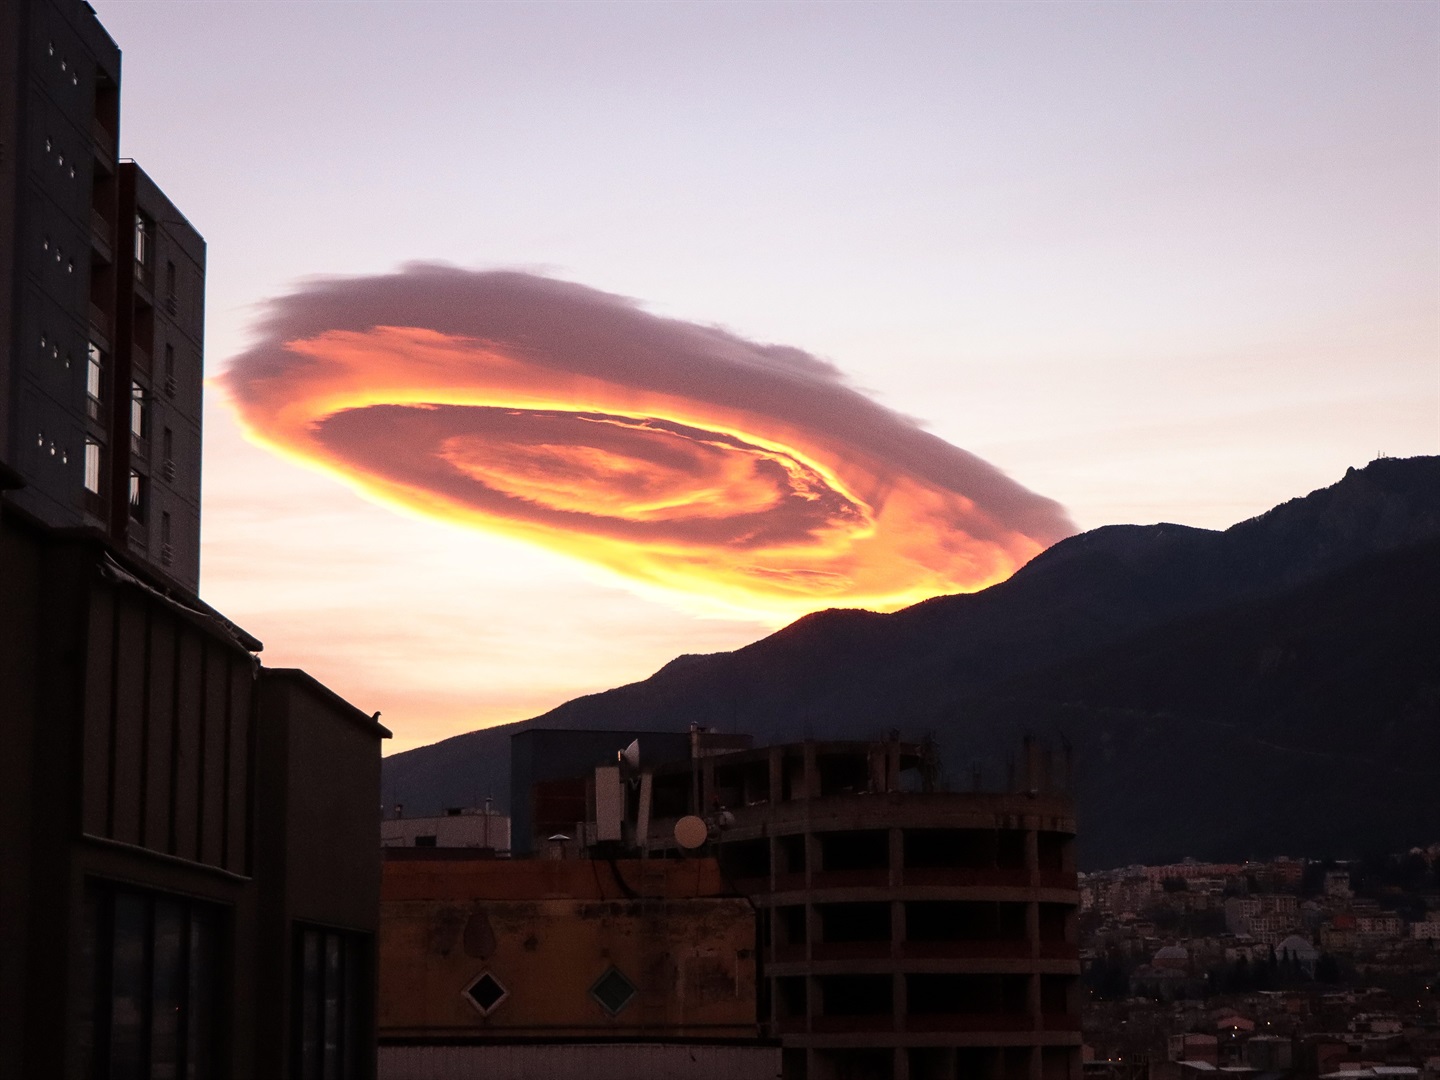 Des photos et des vidéos montrent un nuage brillant en forme d'OVNI planant au-dessus d'une ville de Turquie